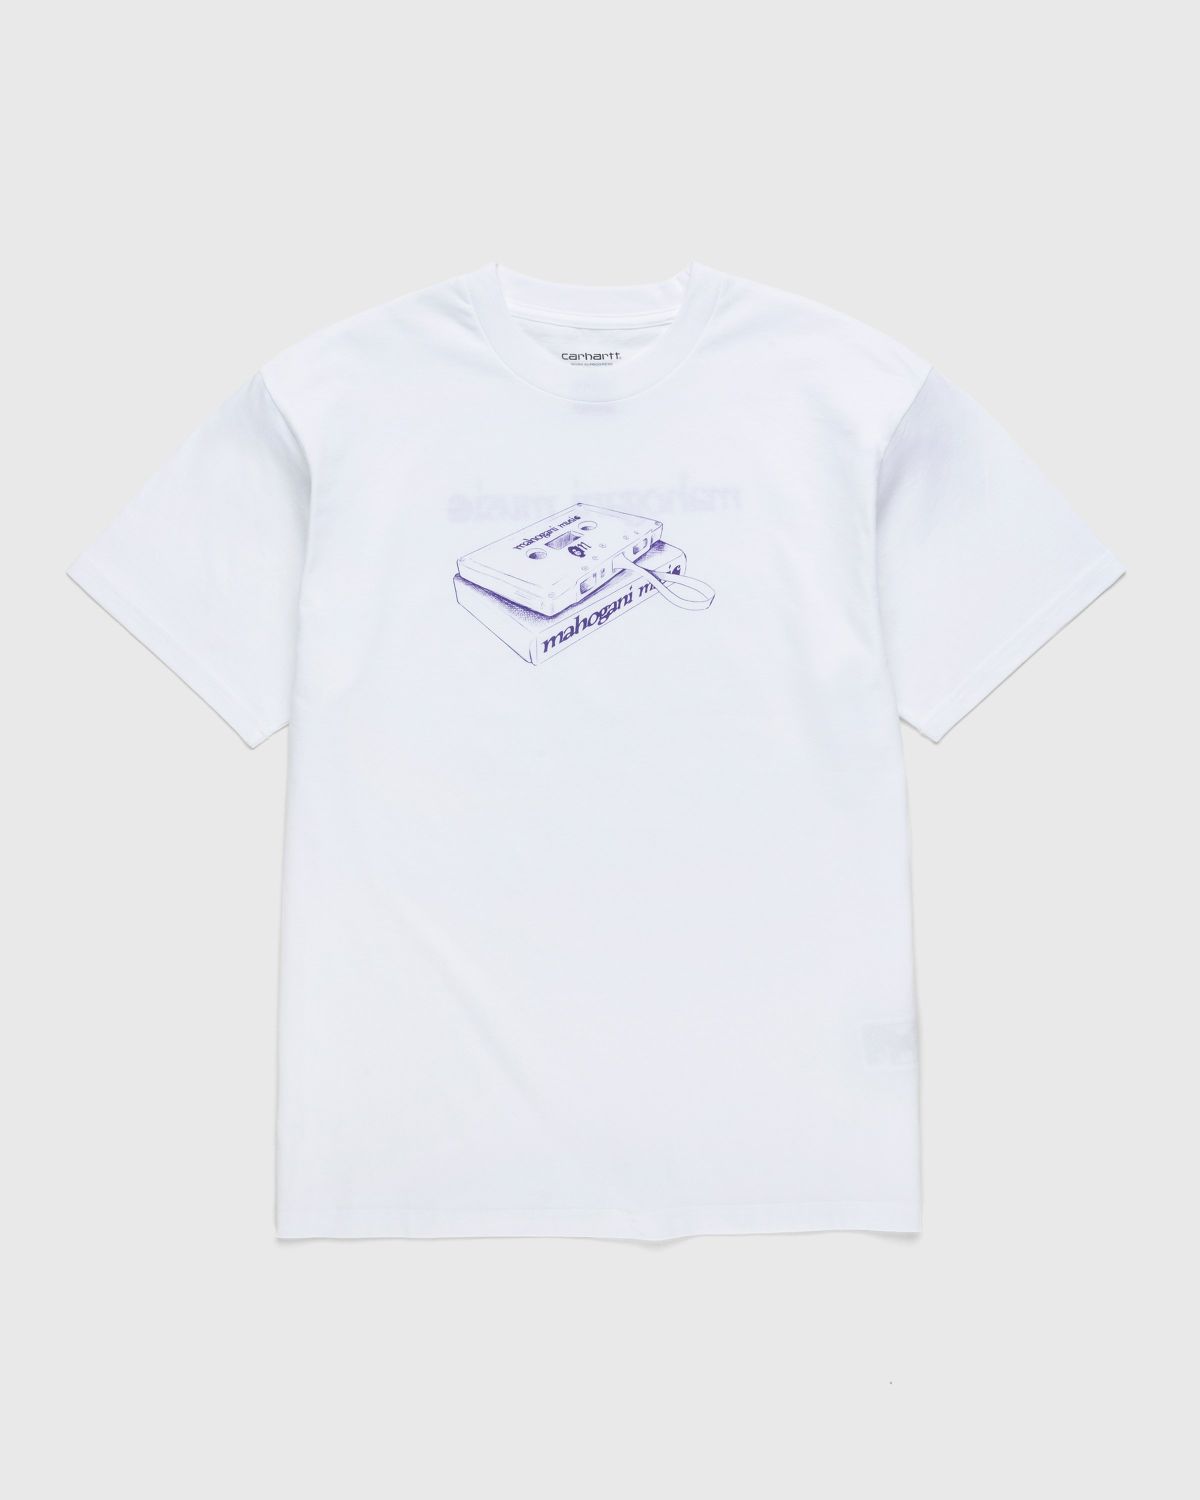 Carhartt WIP – Mahogani Music T-Shirt White/Purple - Tops - White - Image 1